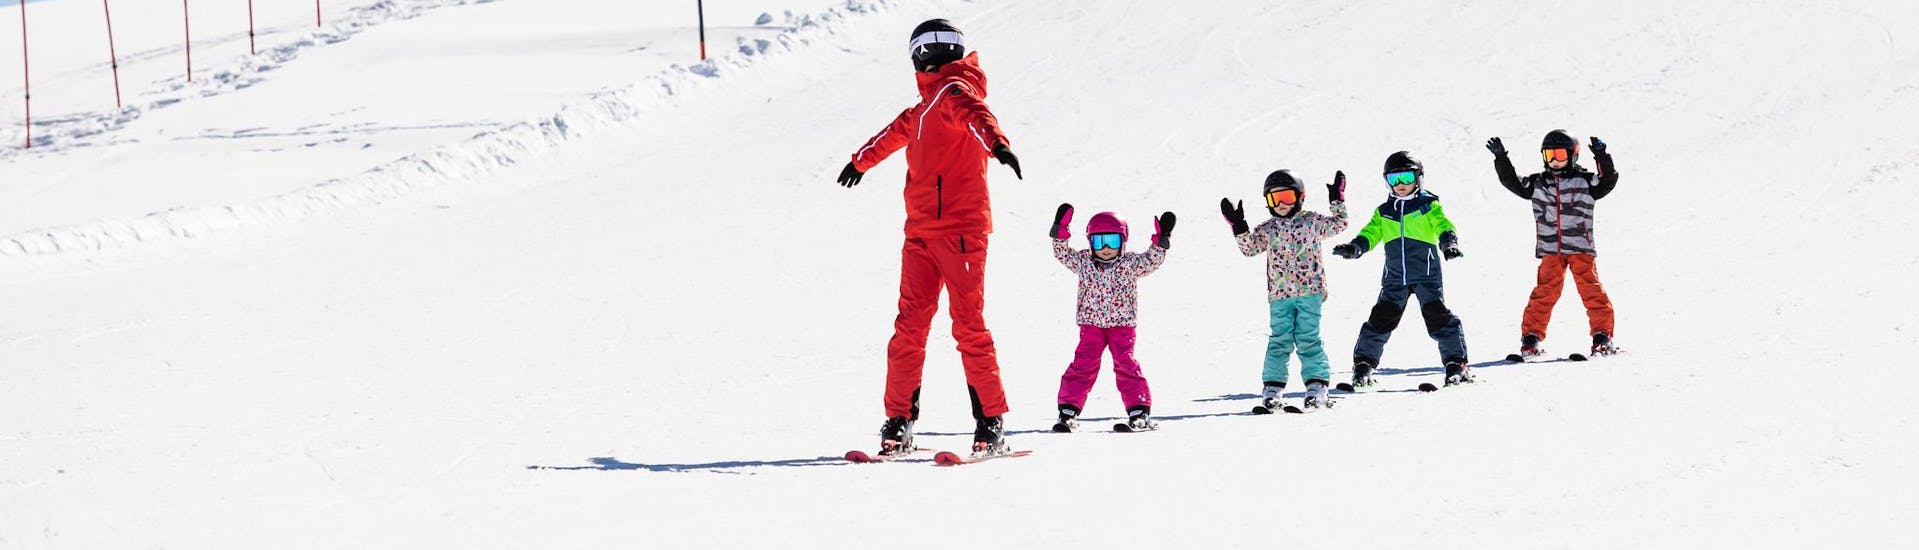 Instructor de esquí y niños disfrutan de una clase de esquí en una escuela cerca de Brides Les Bains.